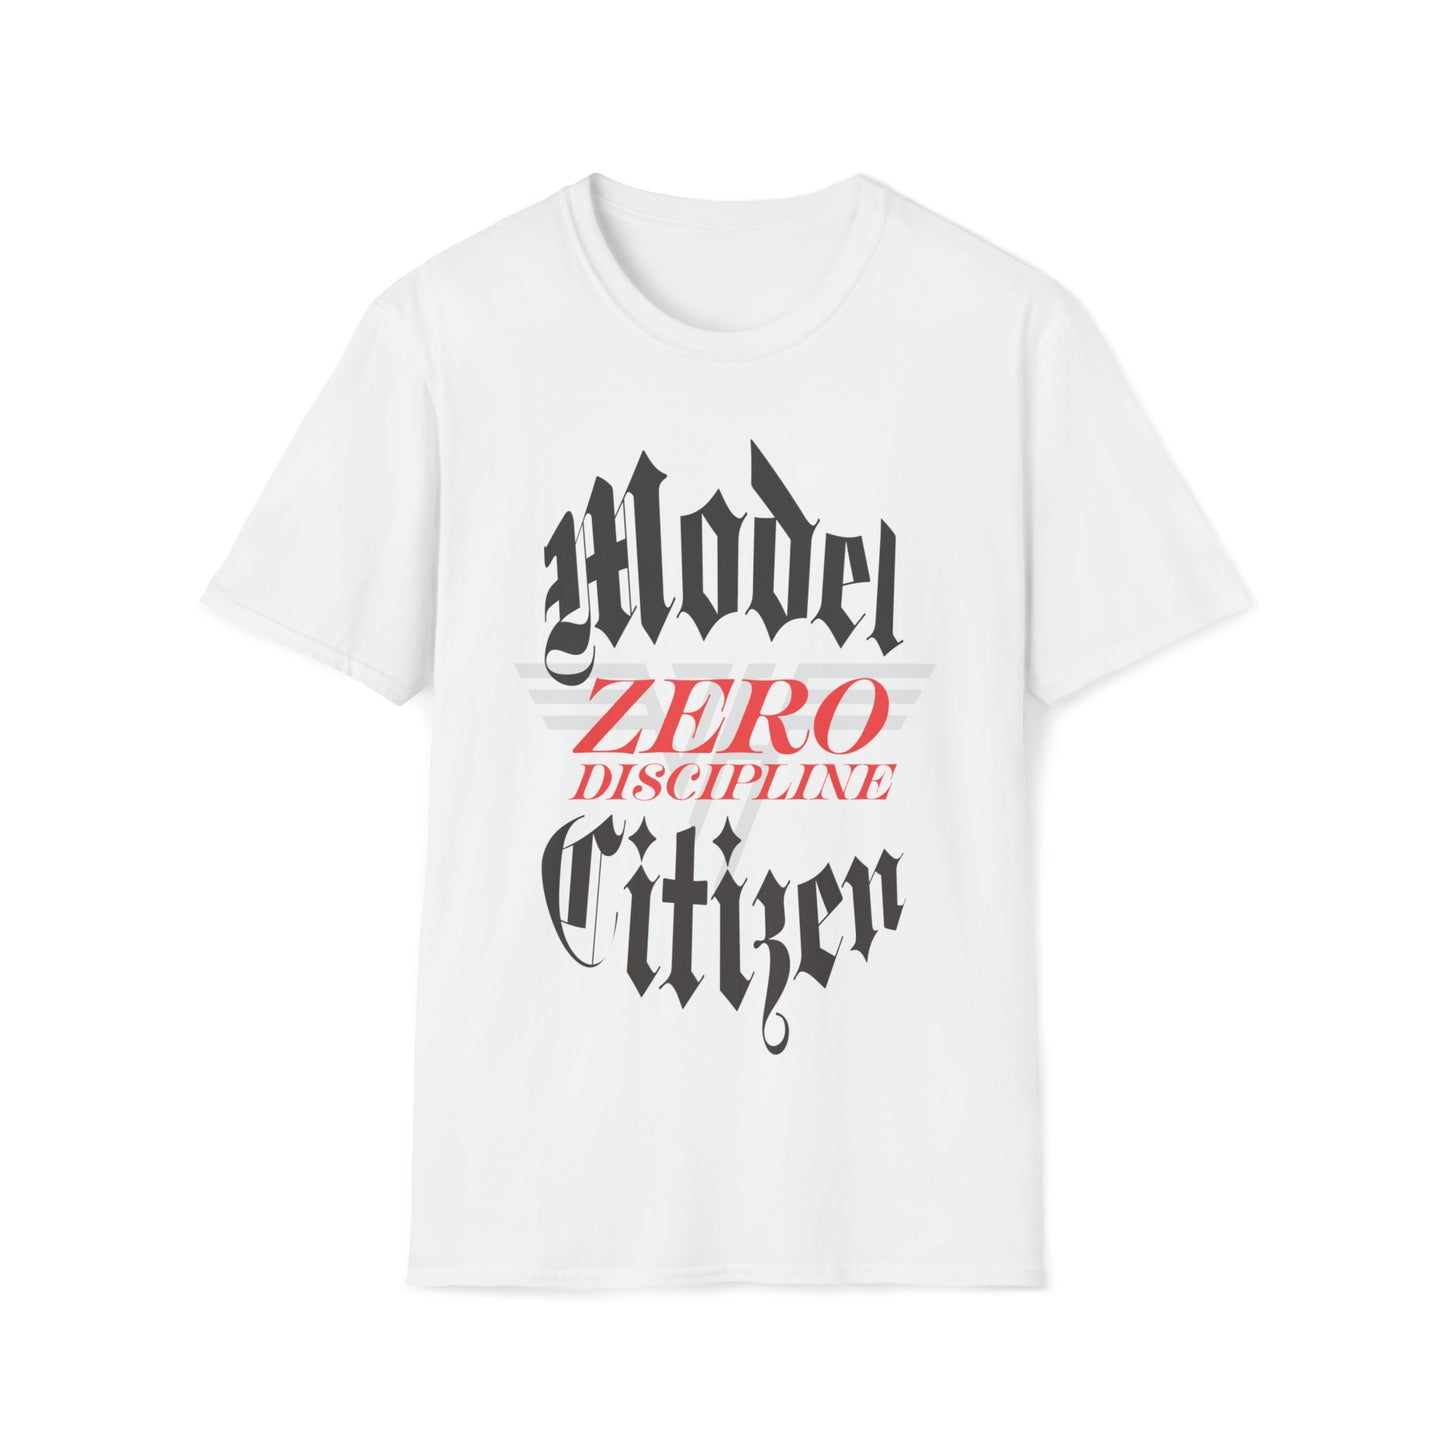 Van Halen Model Citizen / Zero Discipline Tee Sz. S to 3XL